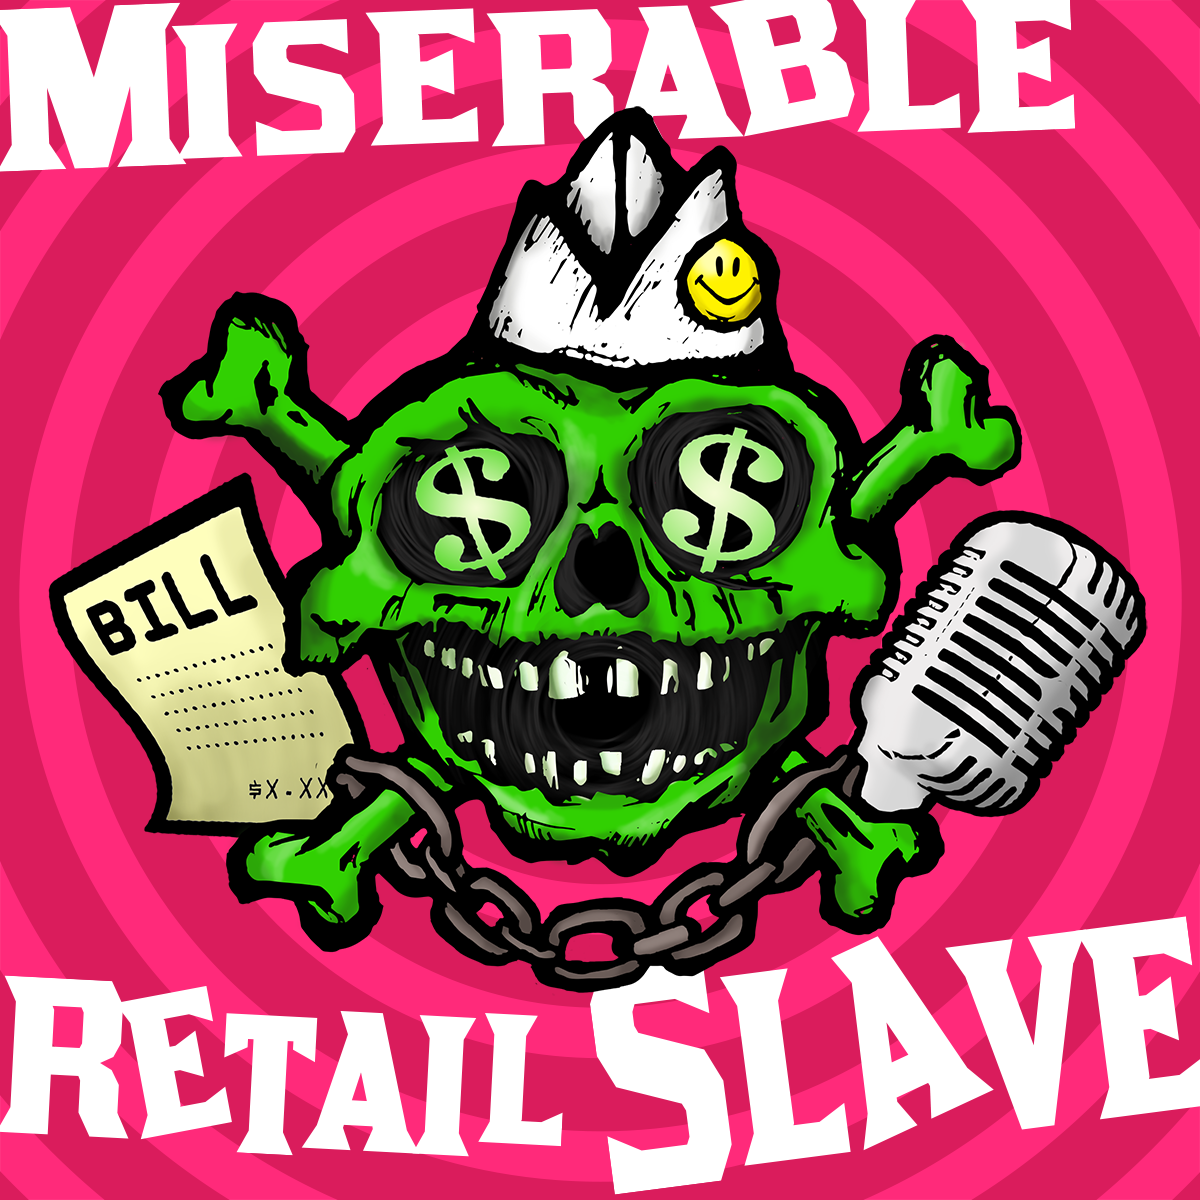 Miserable Retail Slave.